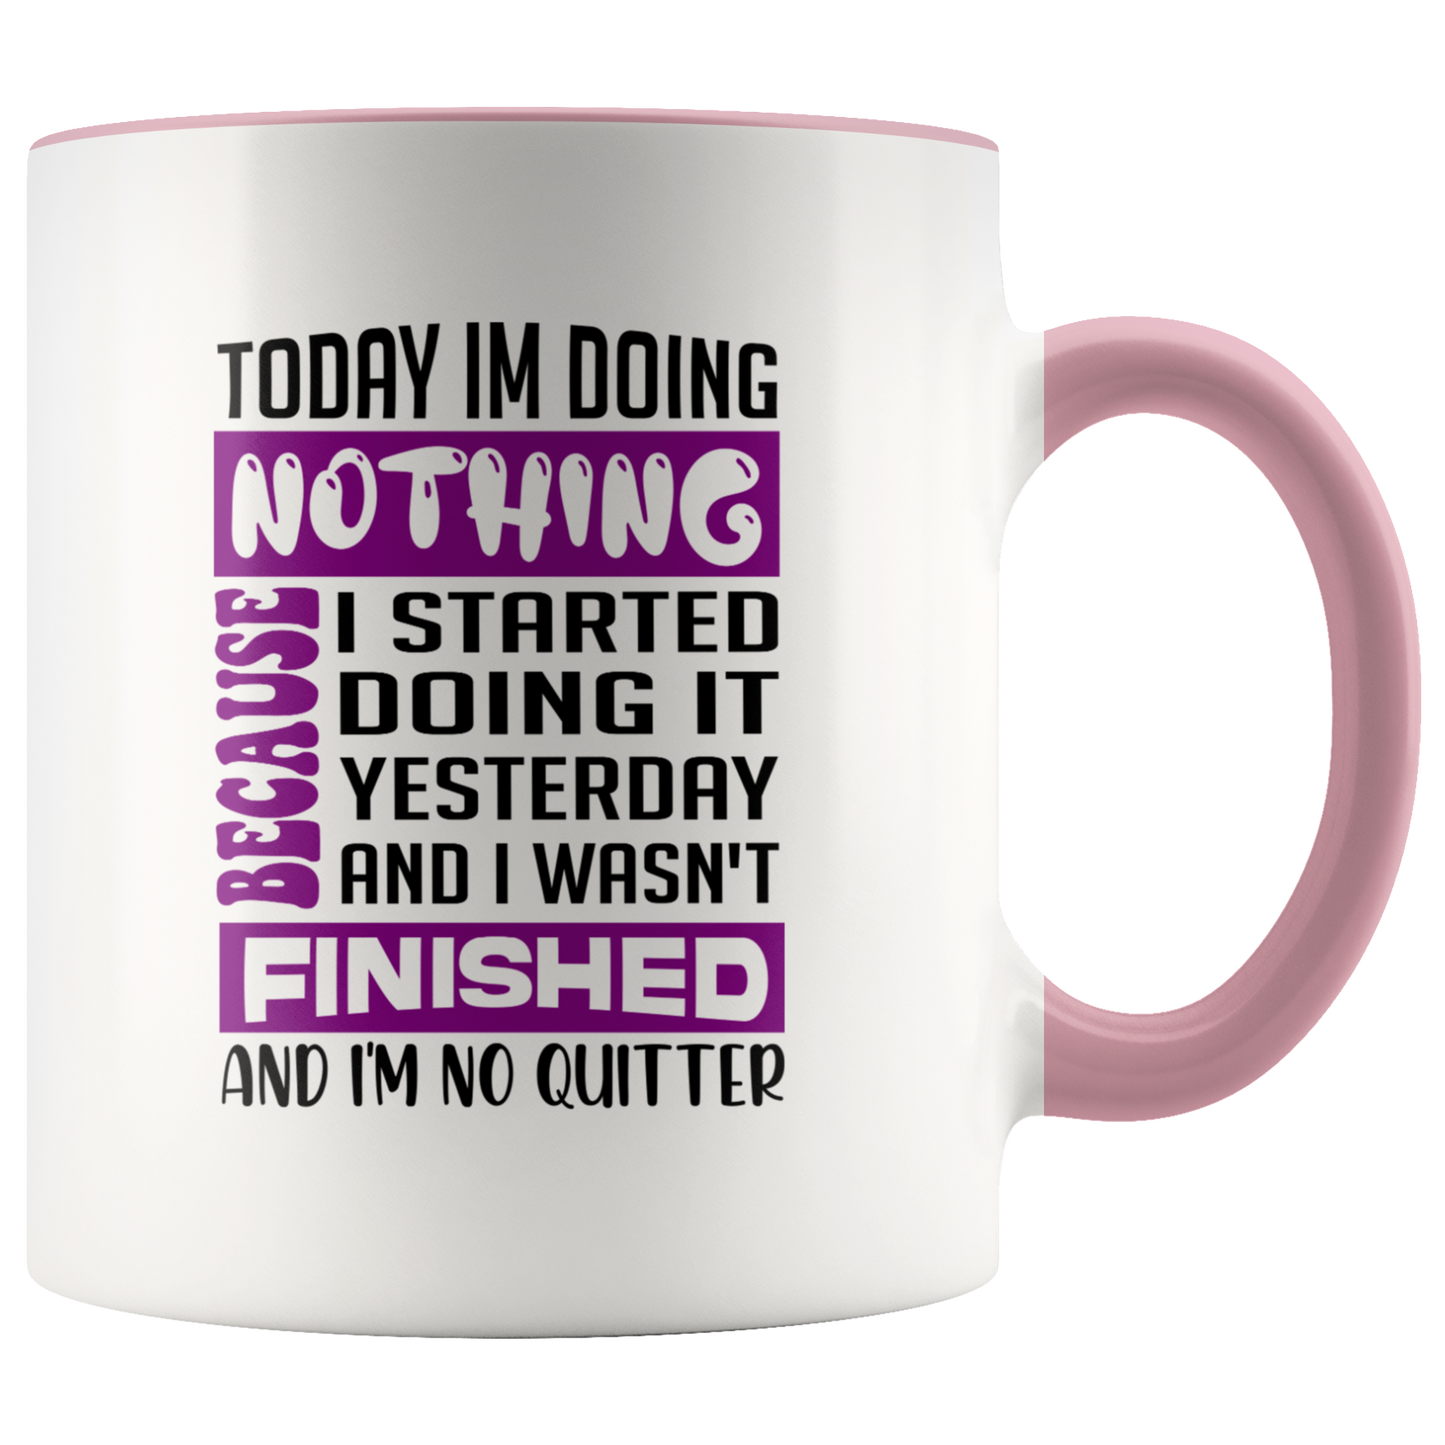 Sarcastic Mug Funny Mug, Humor Mug, Funny Gift, Coffee Lovers, Coffee Gift, Custom Mug